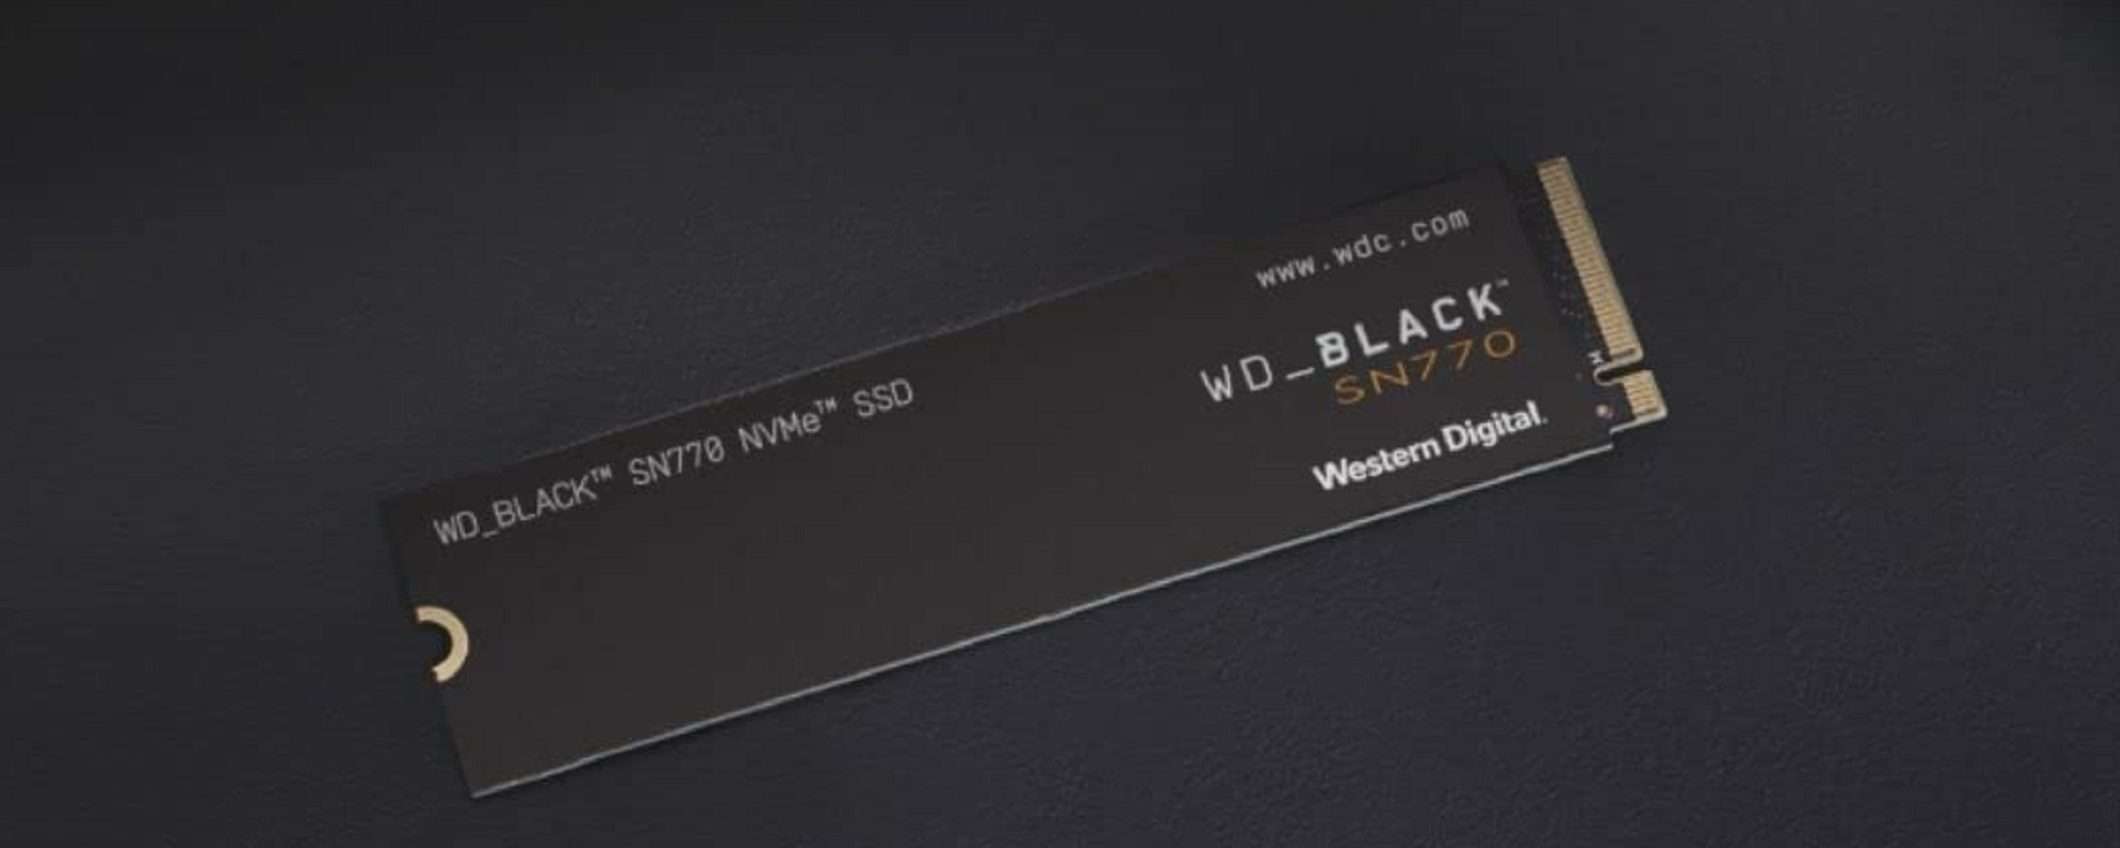 SSD WD_BLACK SN770 da 500GB a soli 58,99€? FOLLIA di Amazon!